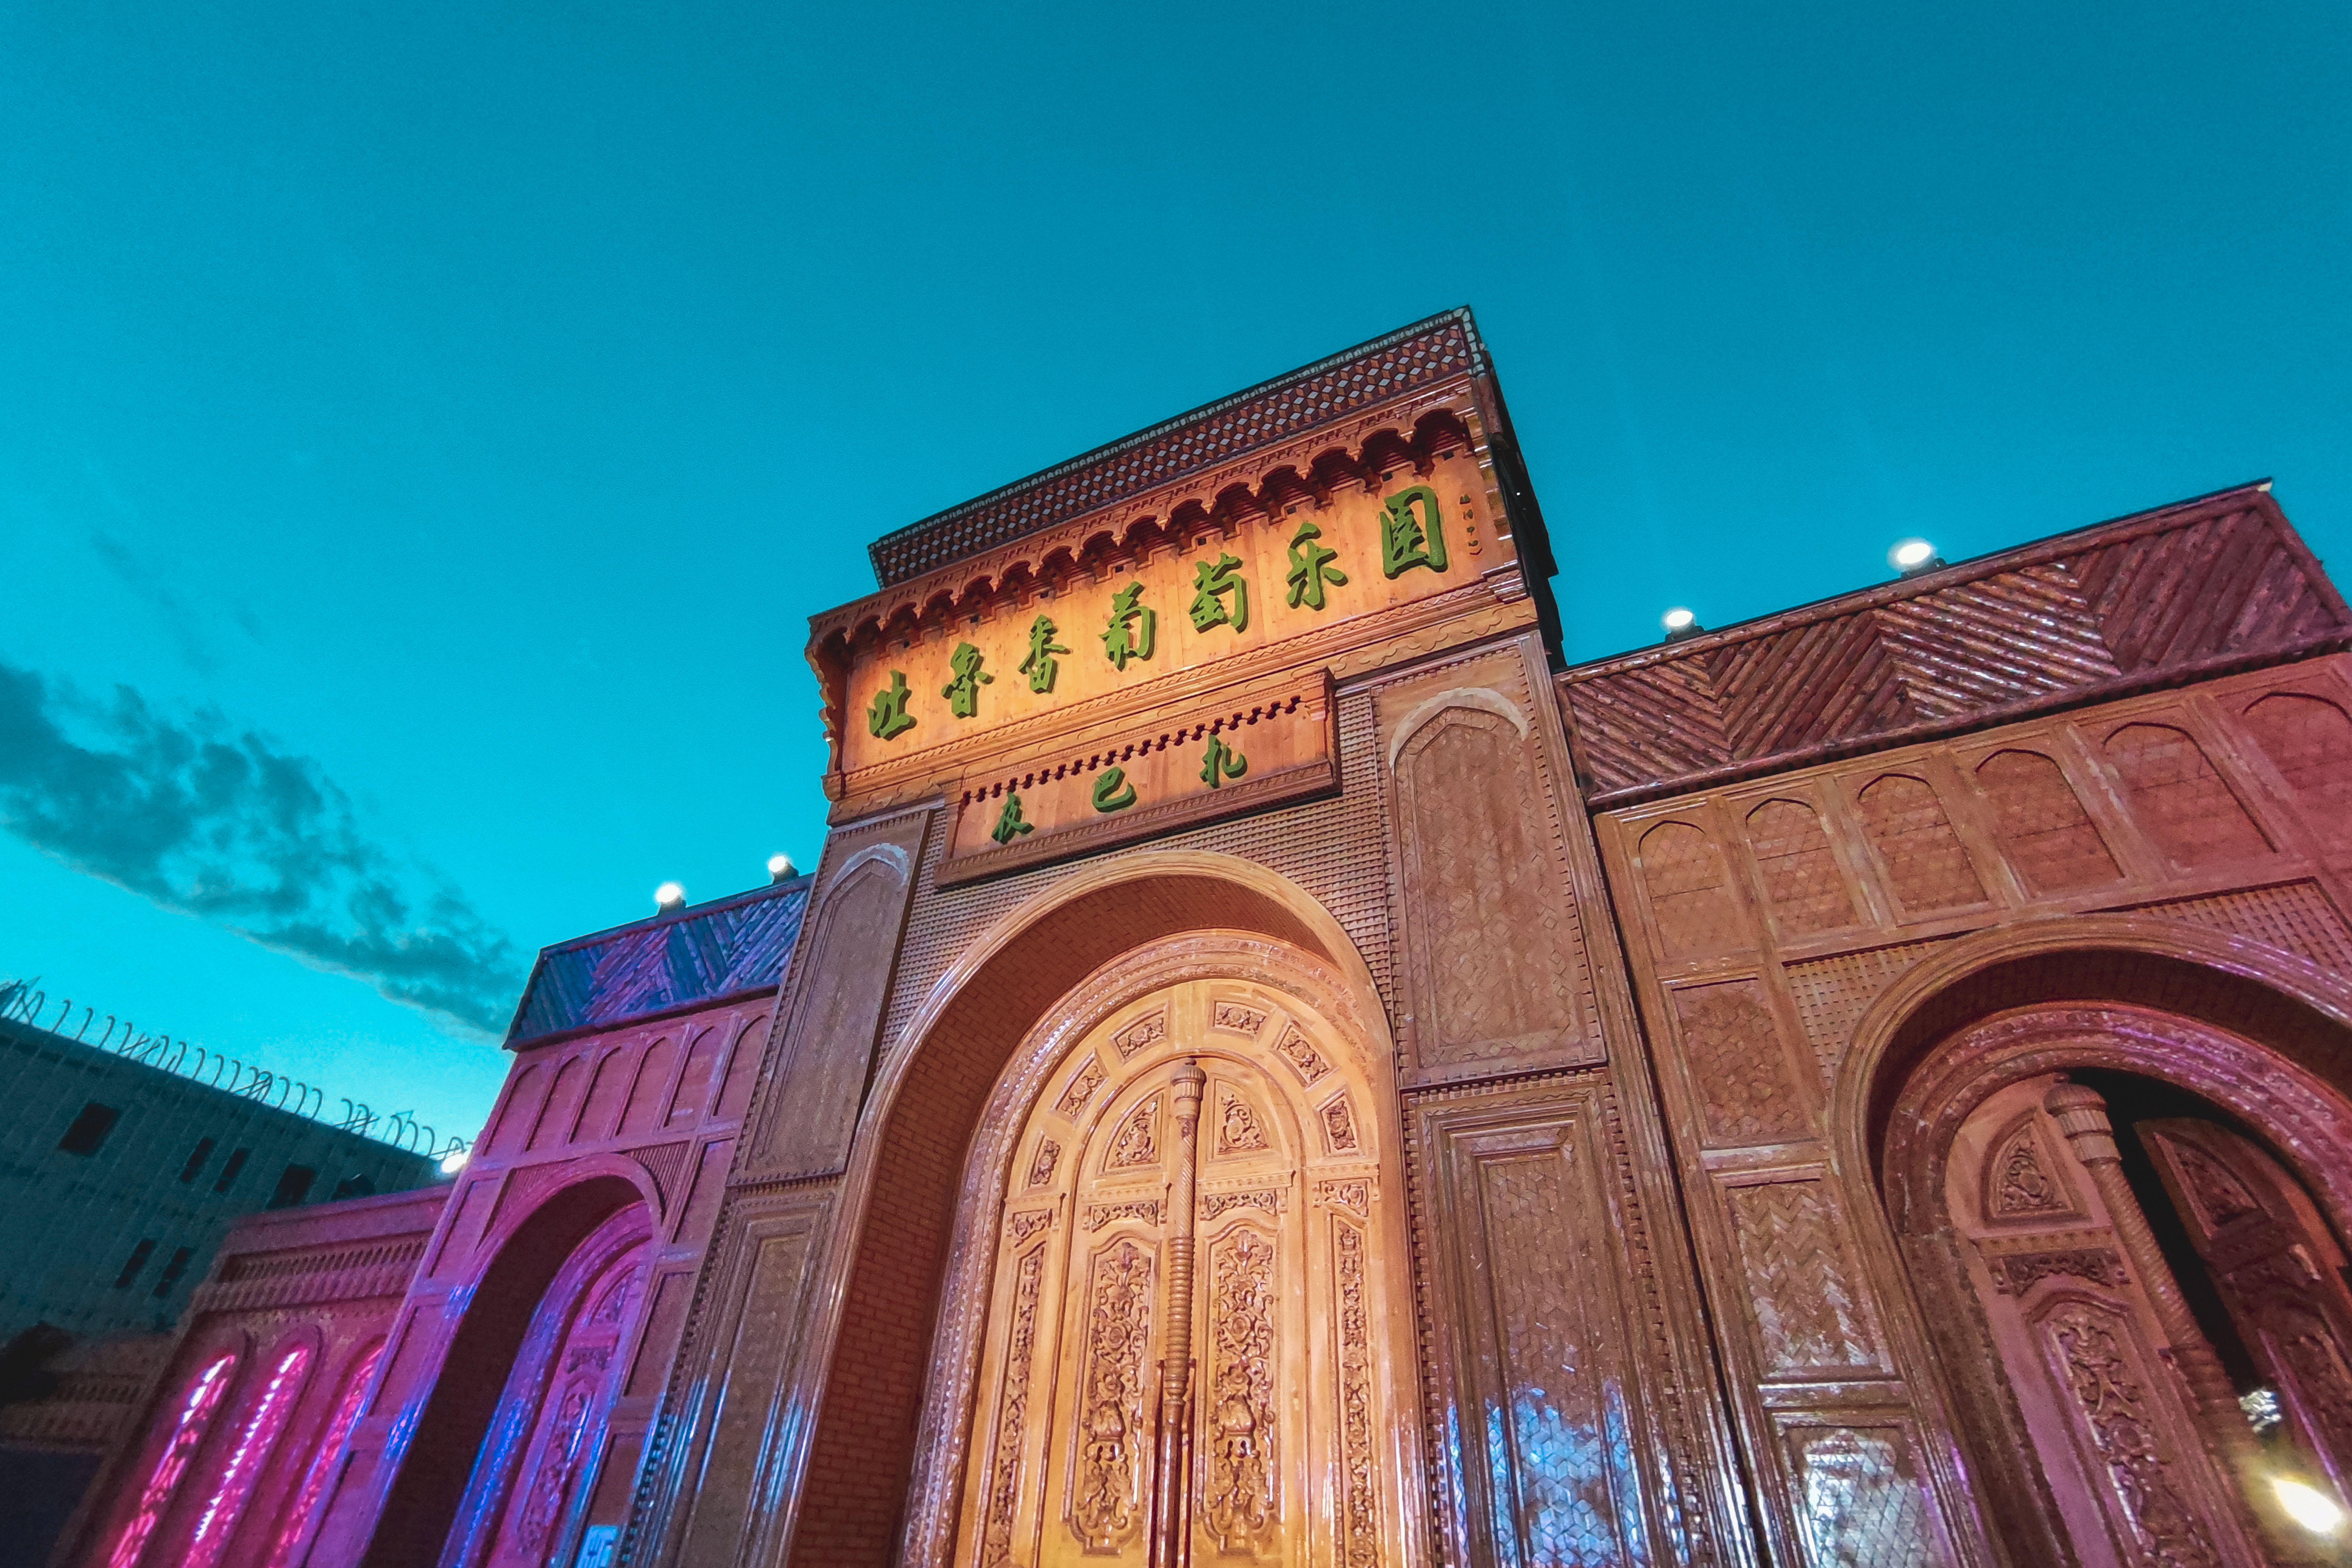 走进吐鲁番坎儿井乐园,在全国首家坎儿井博物馆中探索古代伟大工程